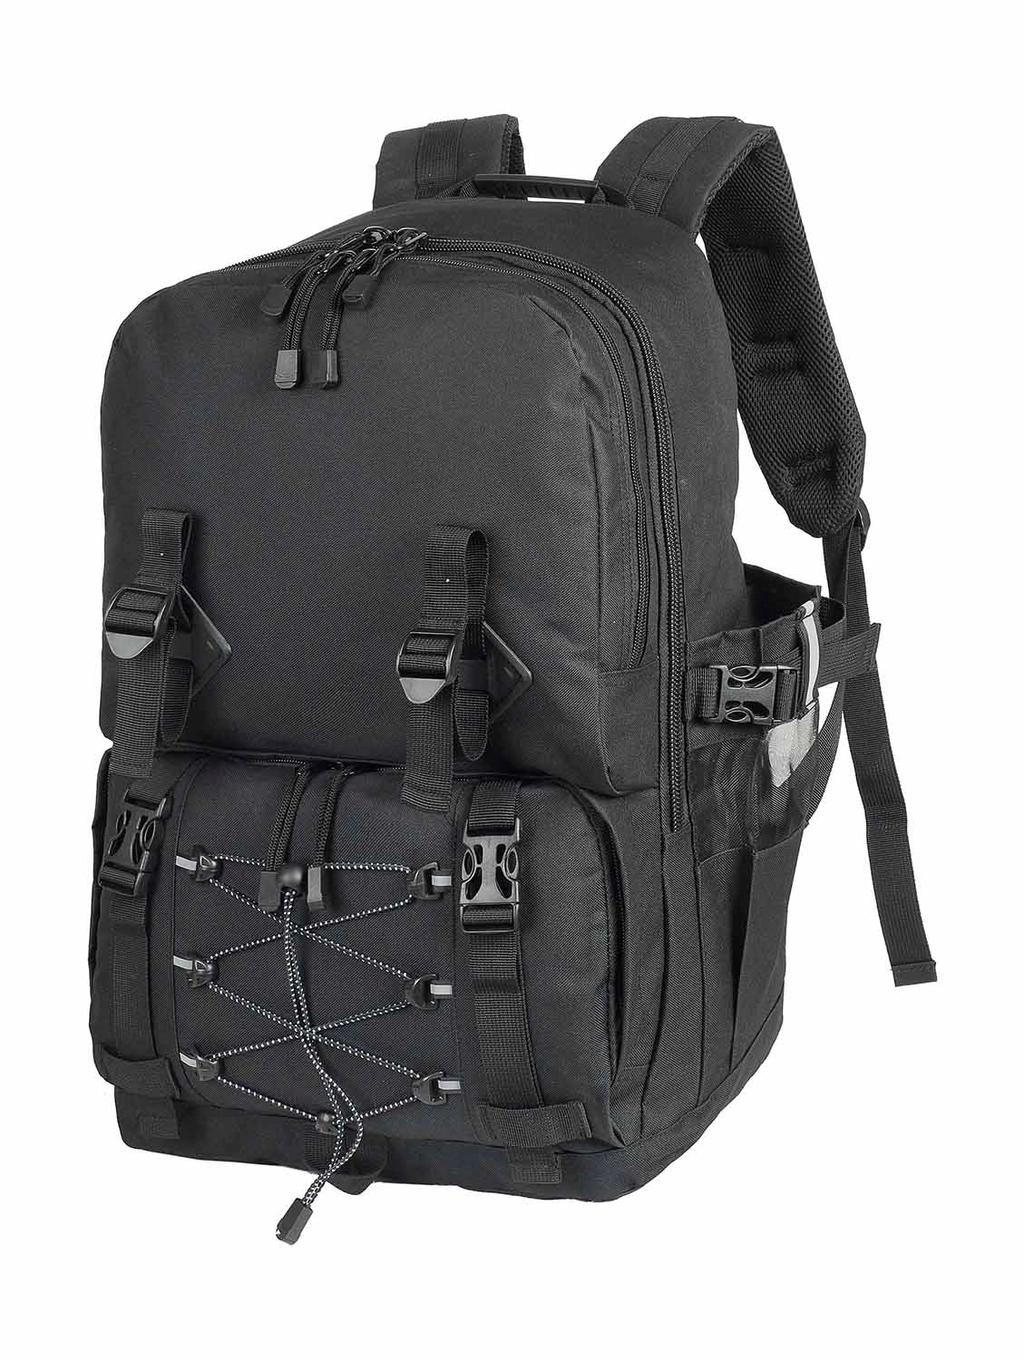 Mount Ararat Hiking Backpack zum Besticken und Bedrucken in der Farbe Black/Black mit Ihren Logo, Schriftzug oder Motiv.